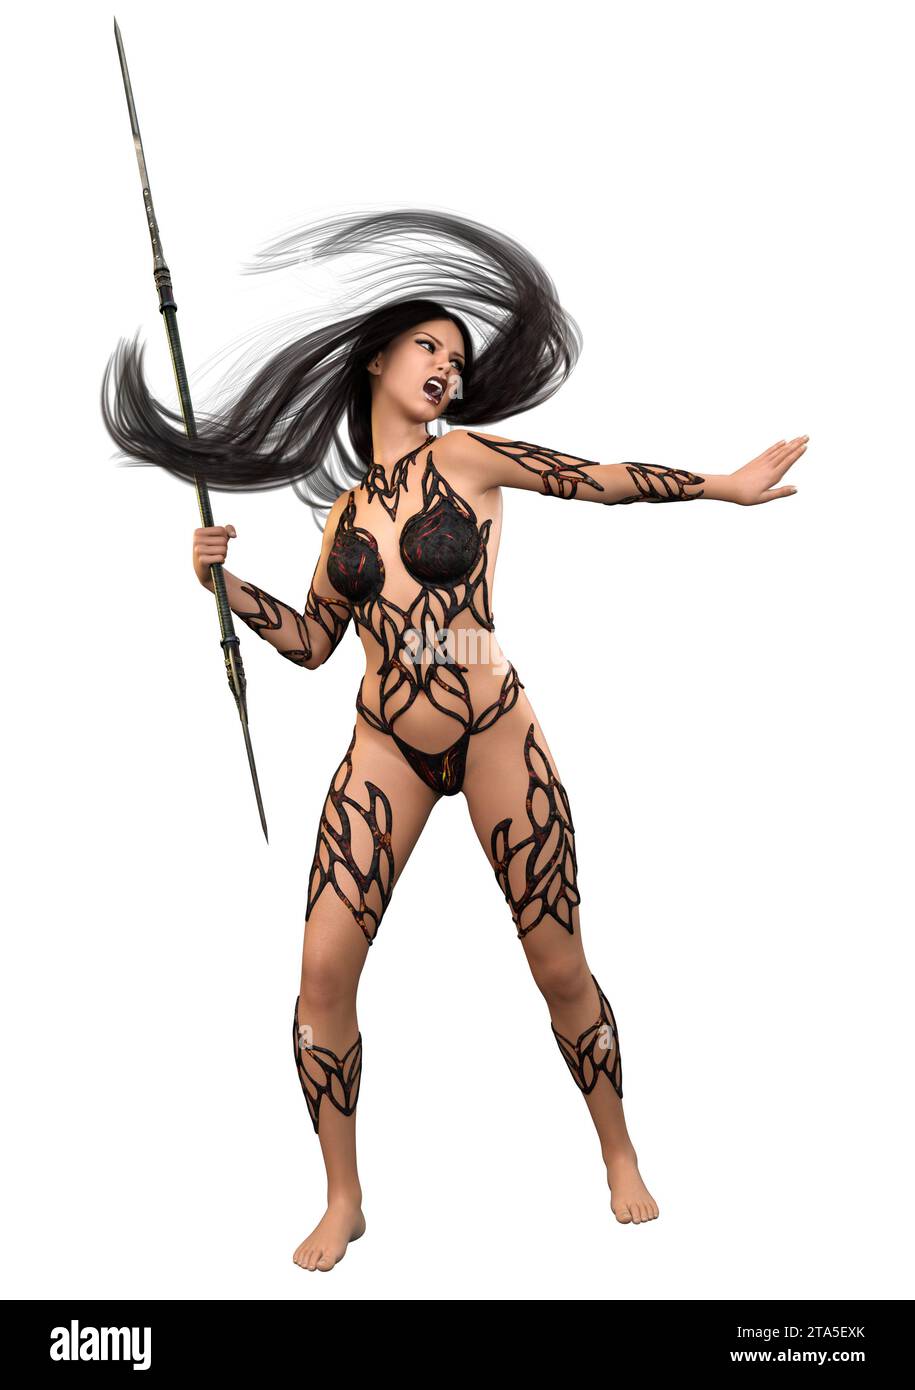 Guerrier fantastique féminin avec de longs cheveux noirs, Illustration 3D. Banque D'Images